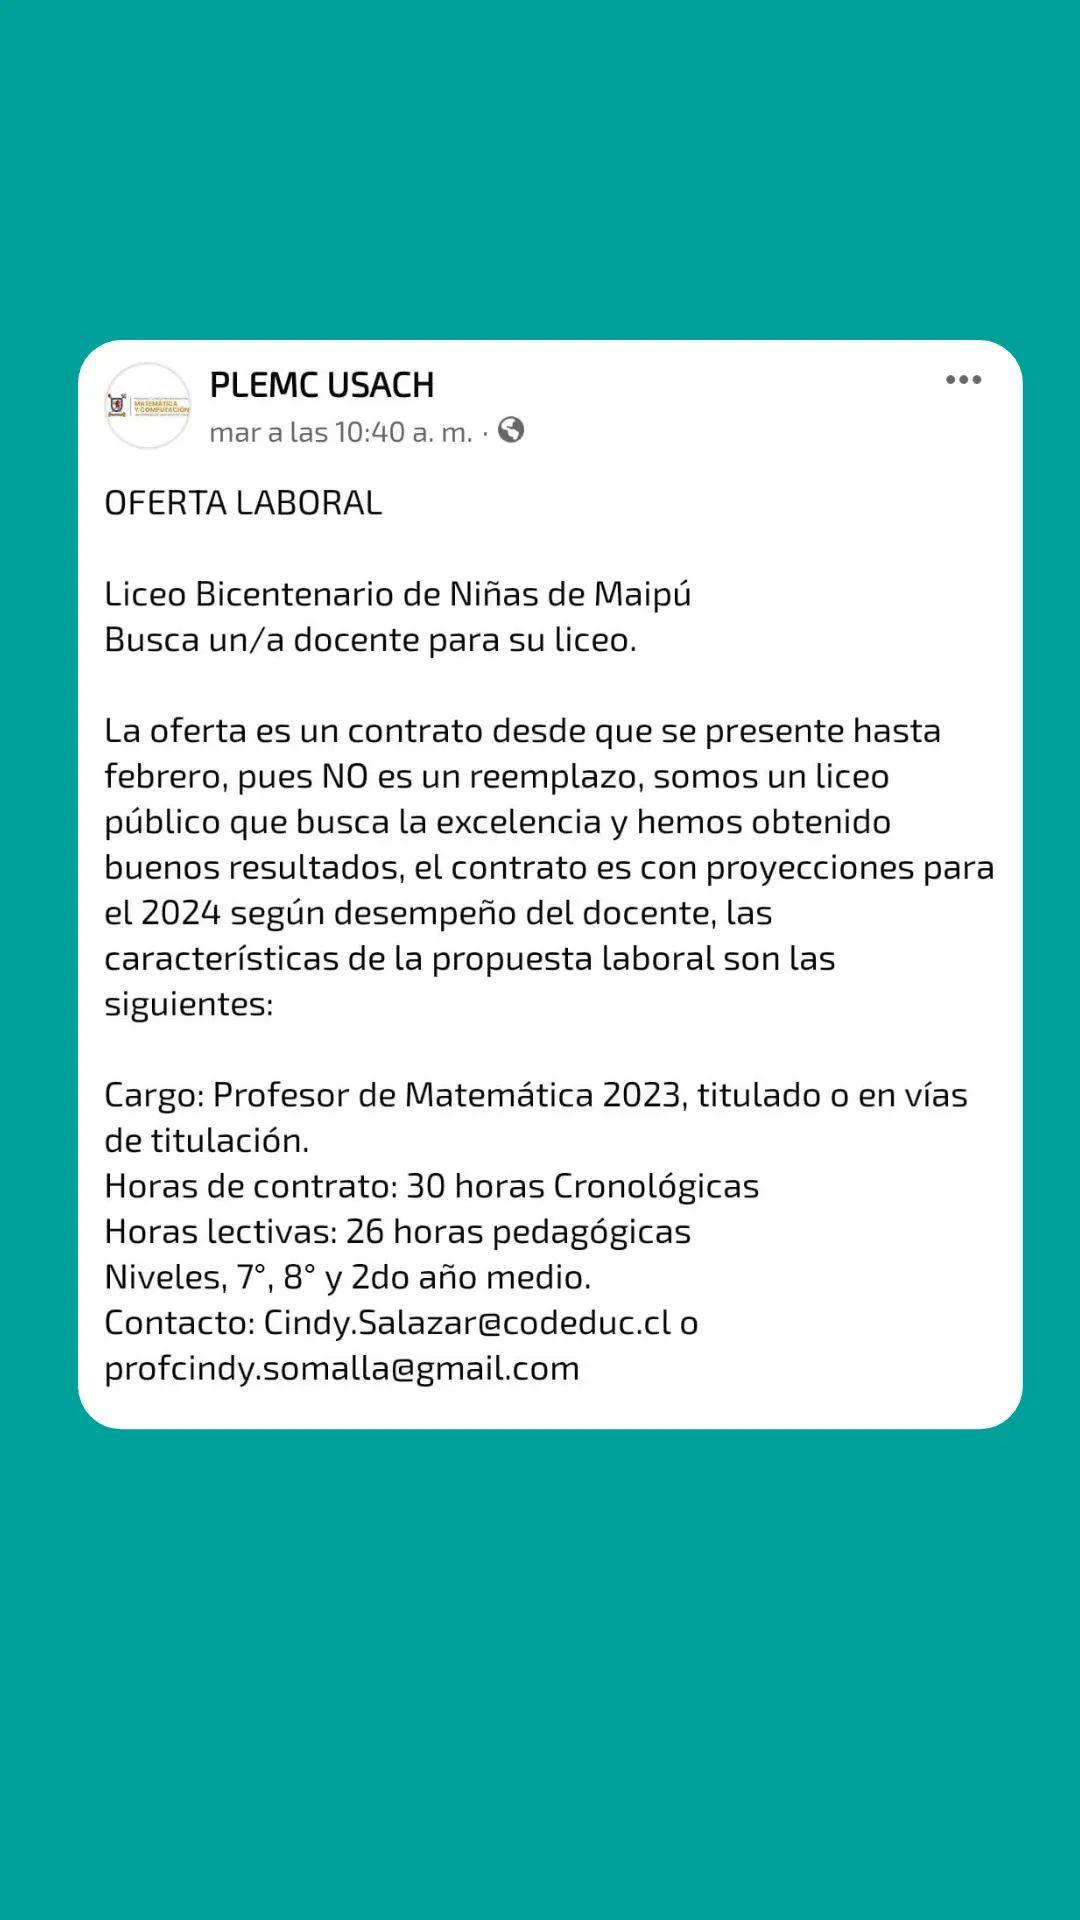 Oferta Laboral Liceo Bicentenario de Maipú